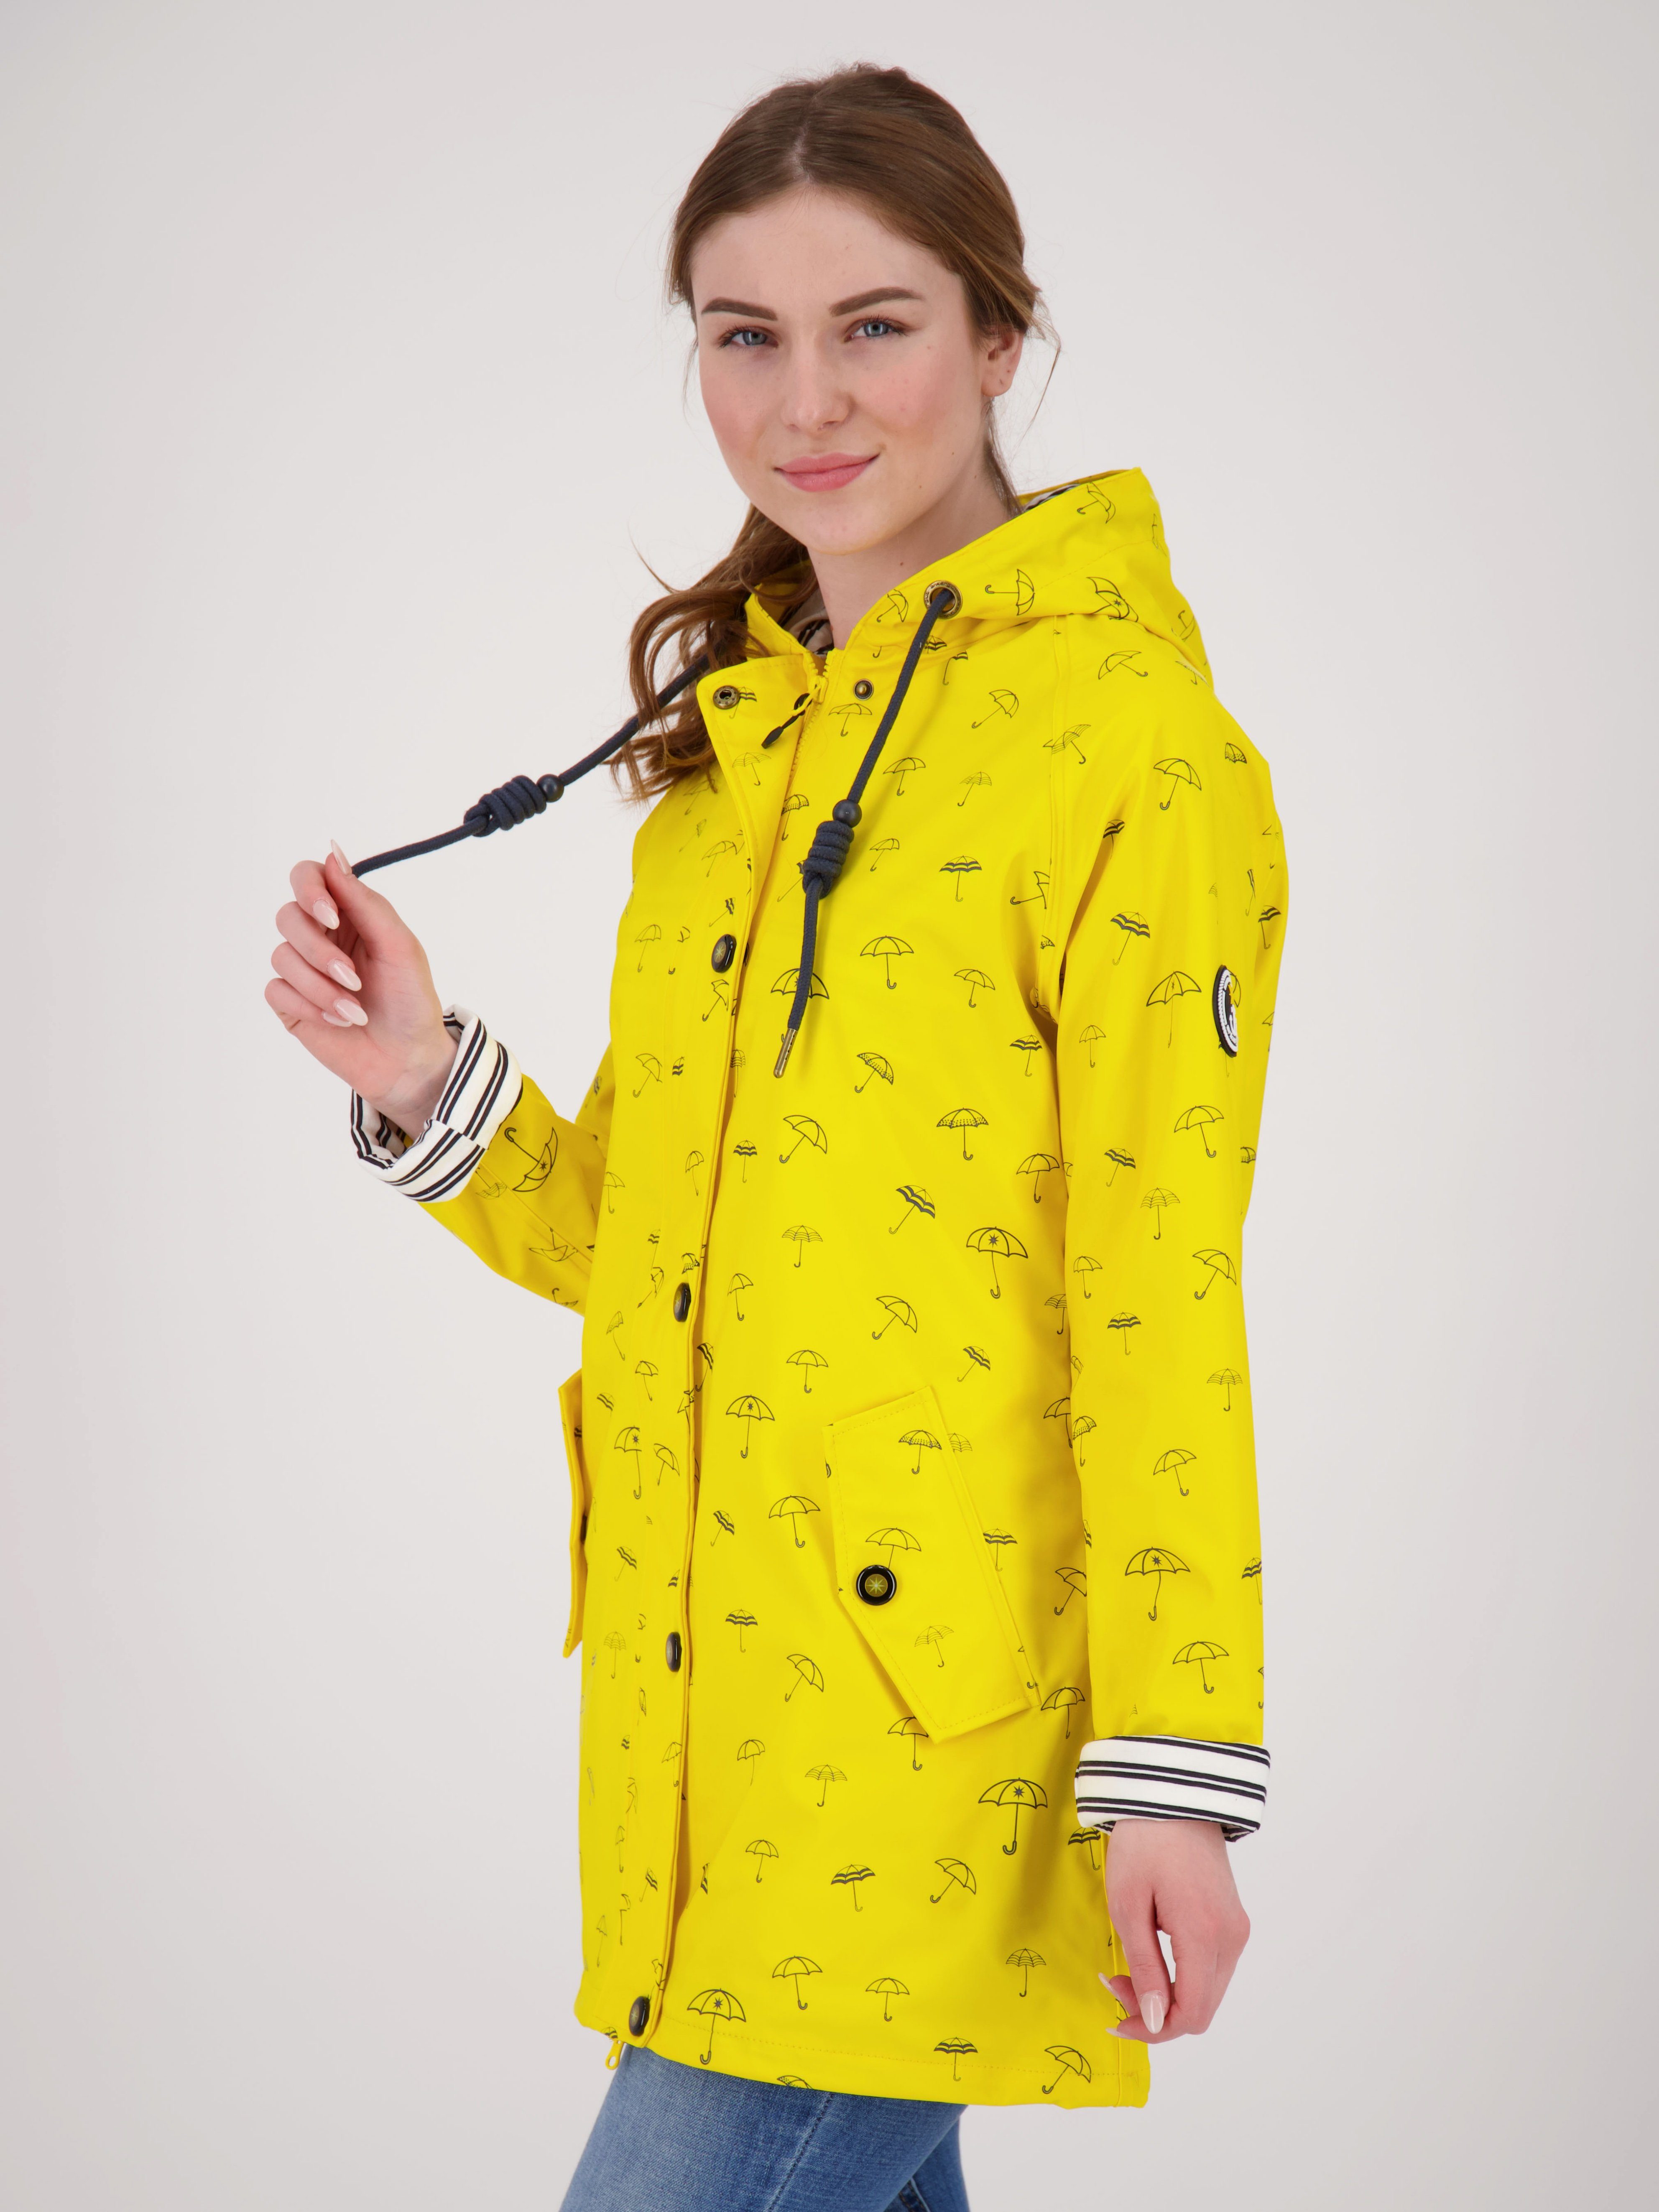 auch Active Größen WIZZARD WOMEN Regenjacke in gelb DEPROC Friesennerz PEAK erhältlich Großen UMBR